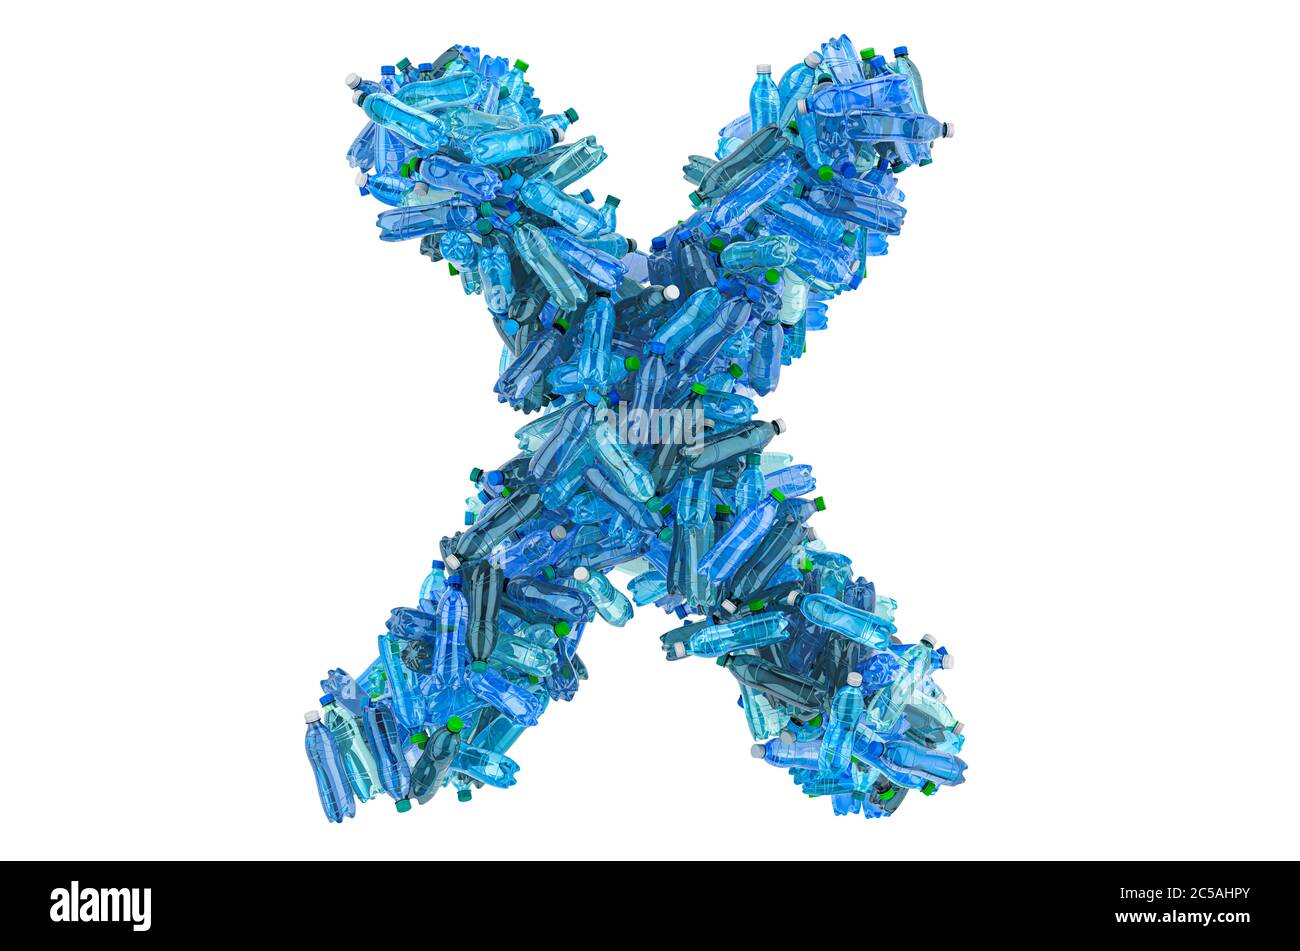 Lettre X provenant de bouteilles d'eau en plastique, rendu 3D isolé sur fond blanc Banque D'Images